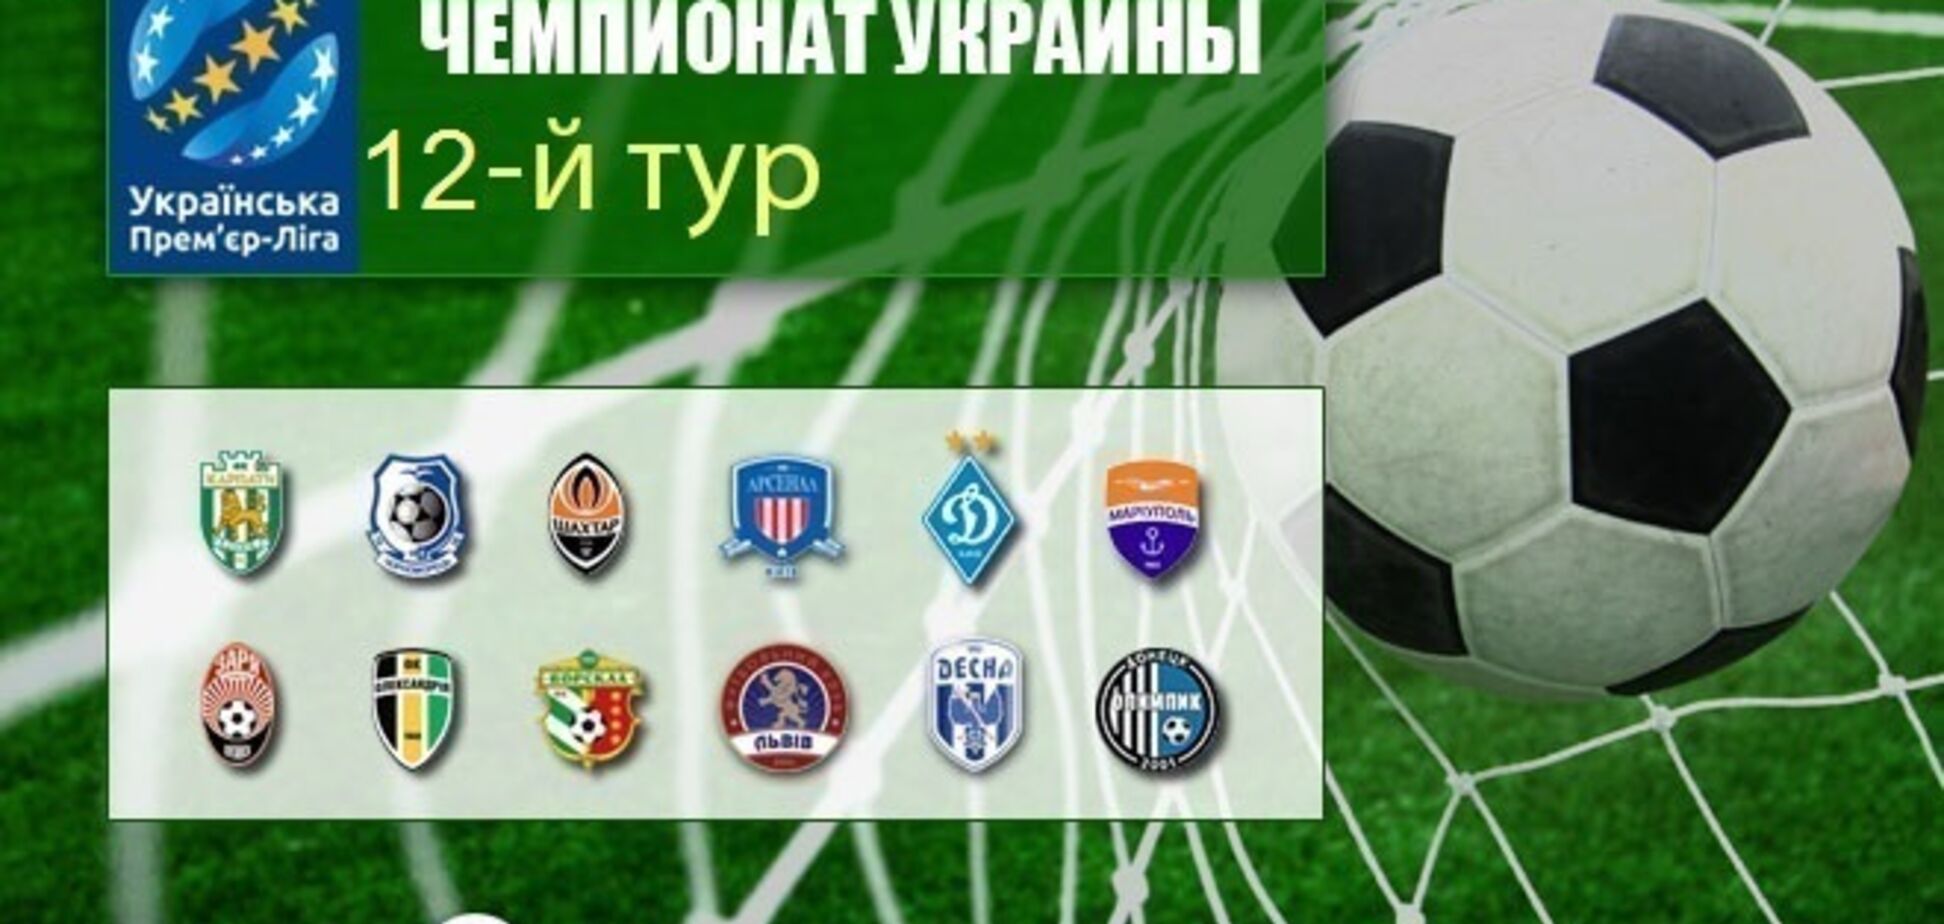 12-й тур чемпіонату України з футболу: результати та огляди